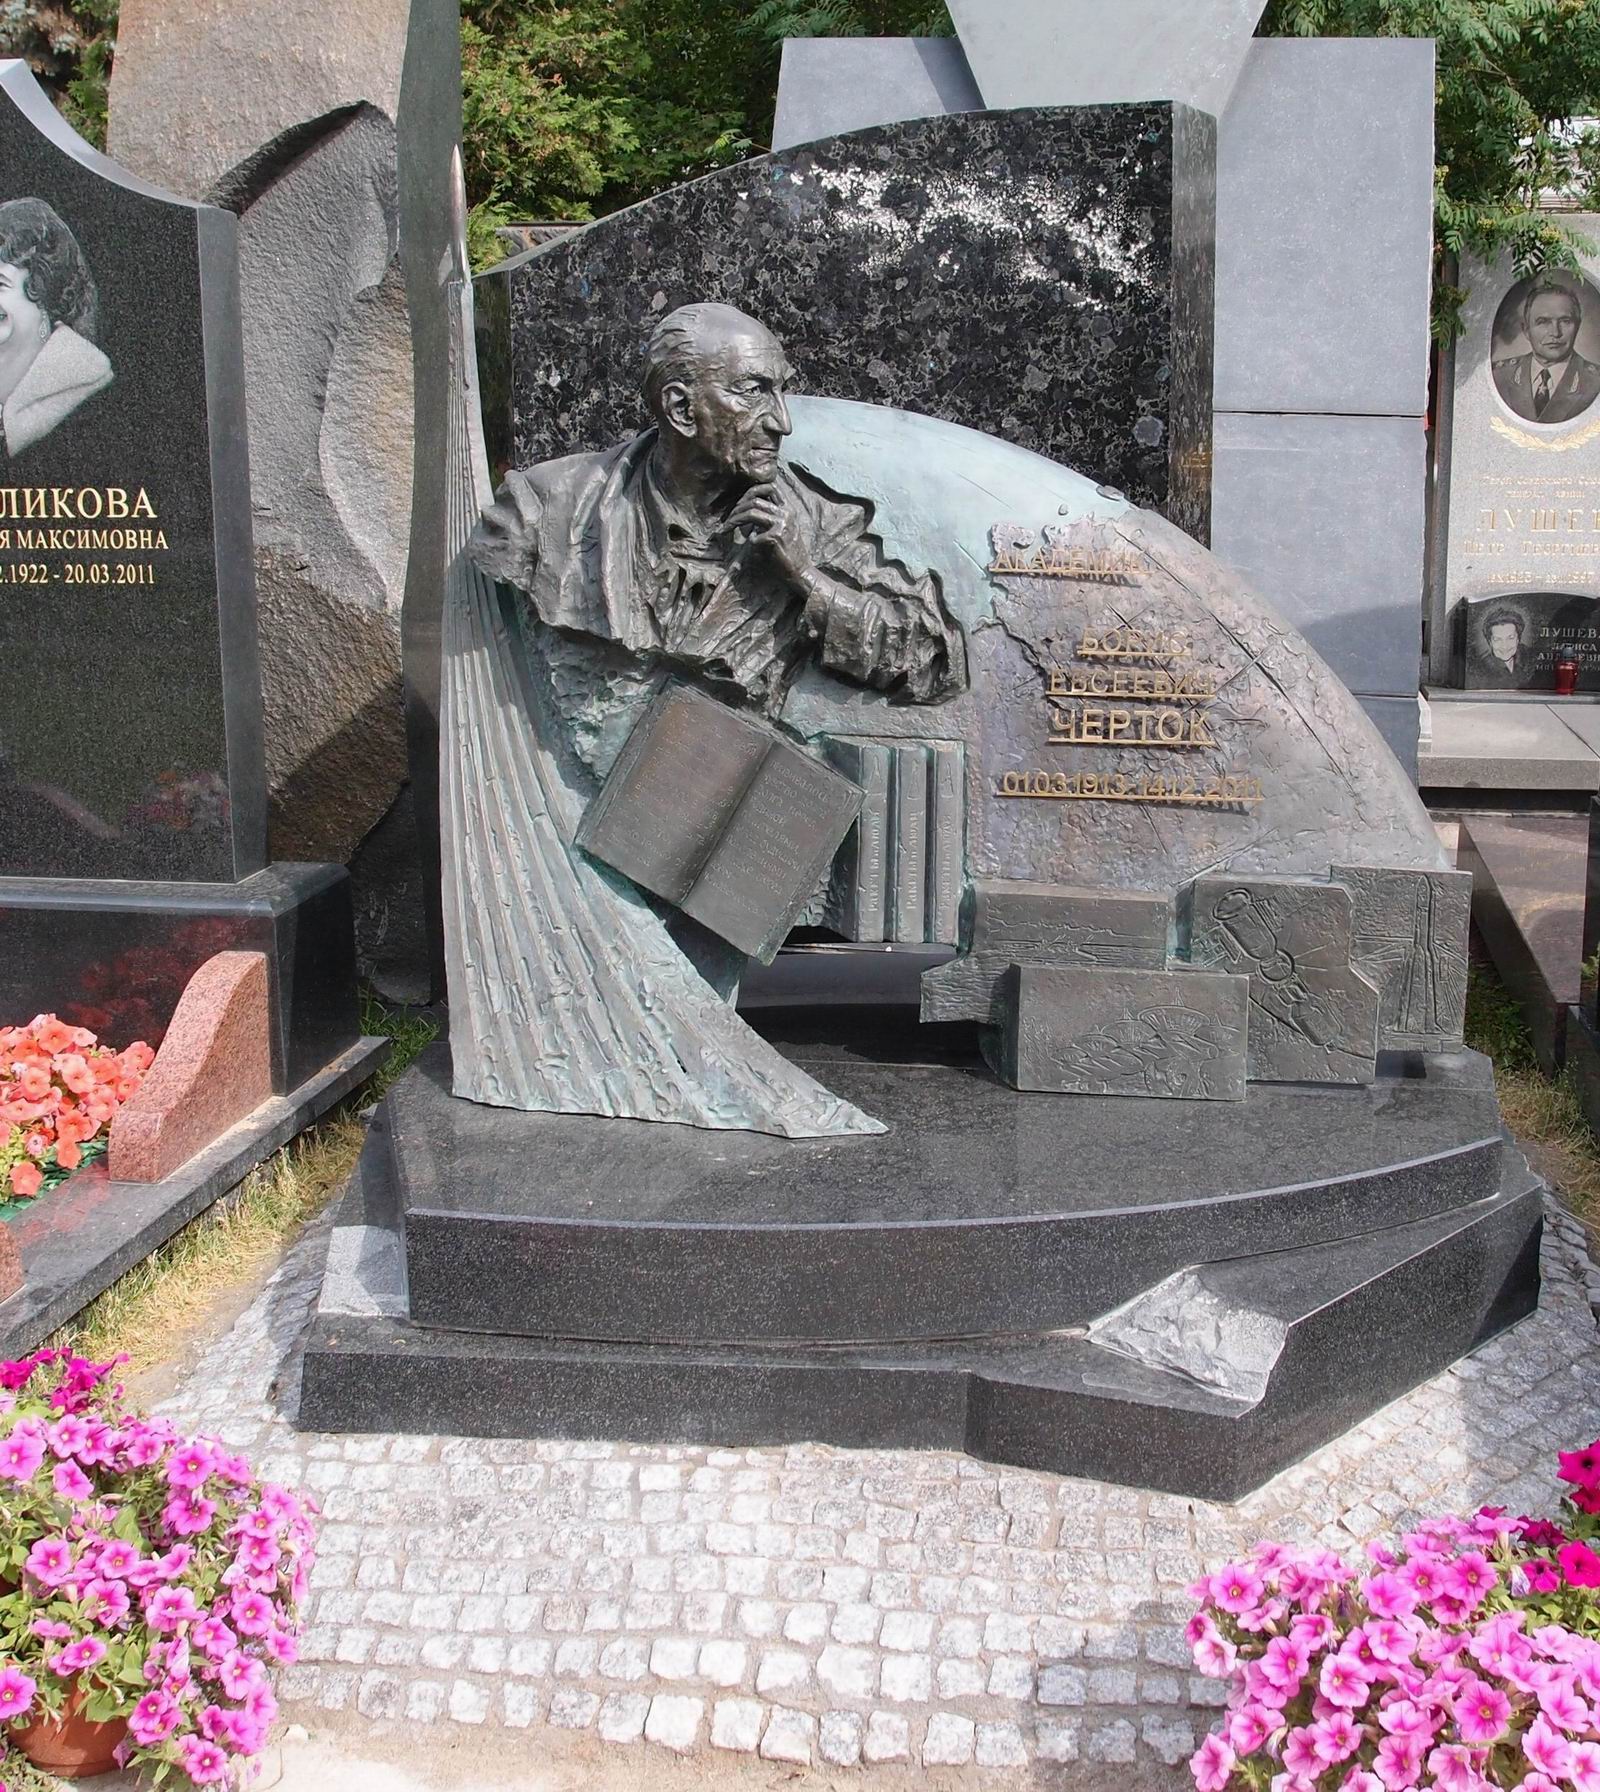 Памятник на могиле Чертока Б.Е. (1912–2011), ск. Я.Бородин, на Новодевичьем кладбище (11–6–7). Нажмите левую кнопку мыши чтобы увидеть фрагмент памятника.